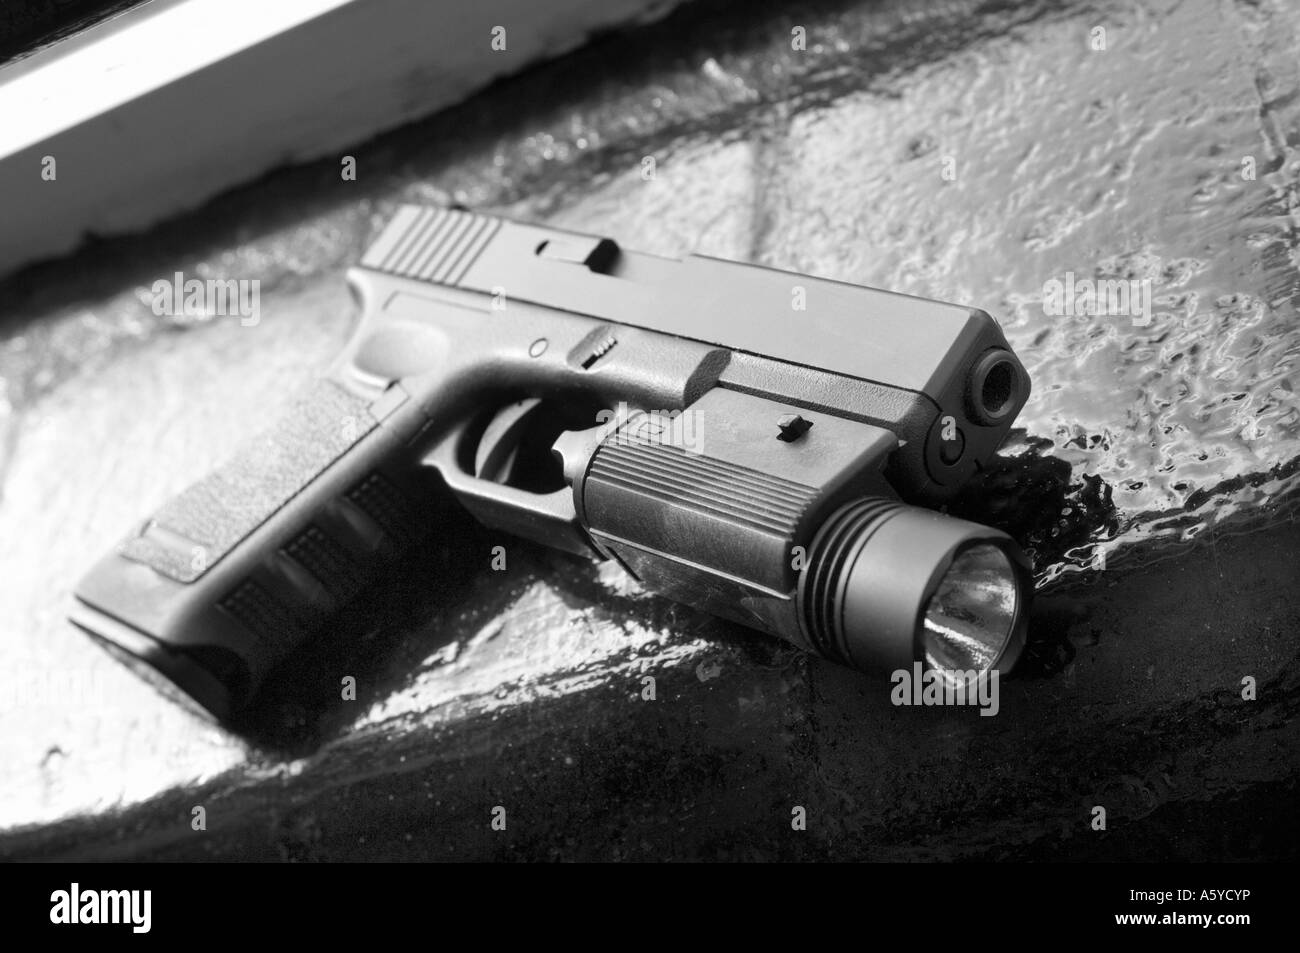 A glock pistola automatica giacente su un davanzale (replica pistola) Foto Stock